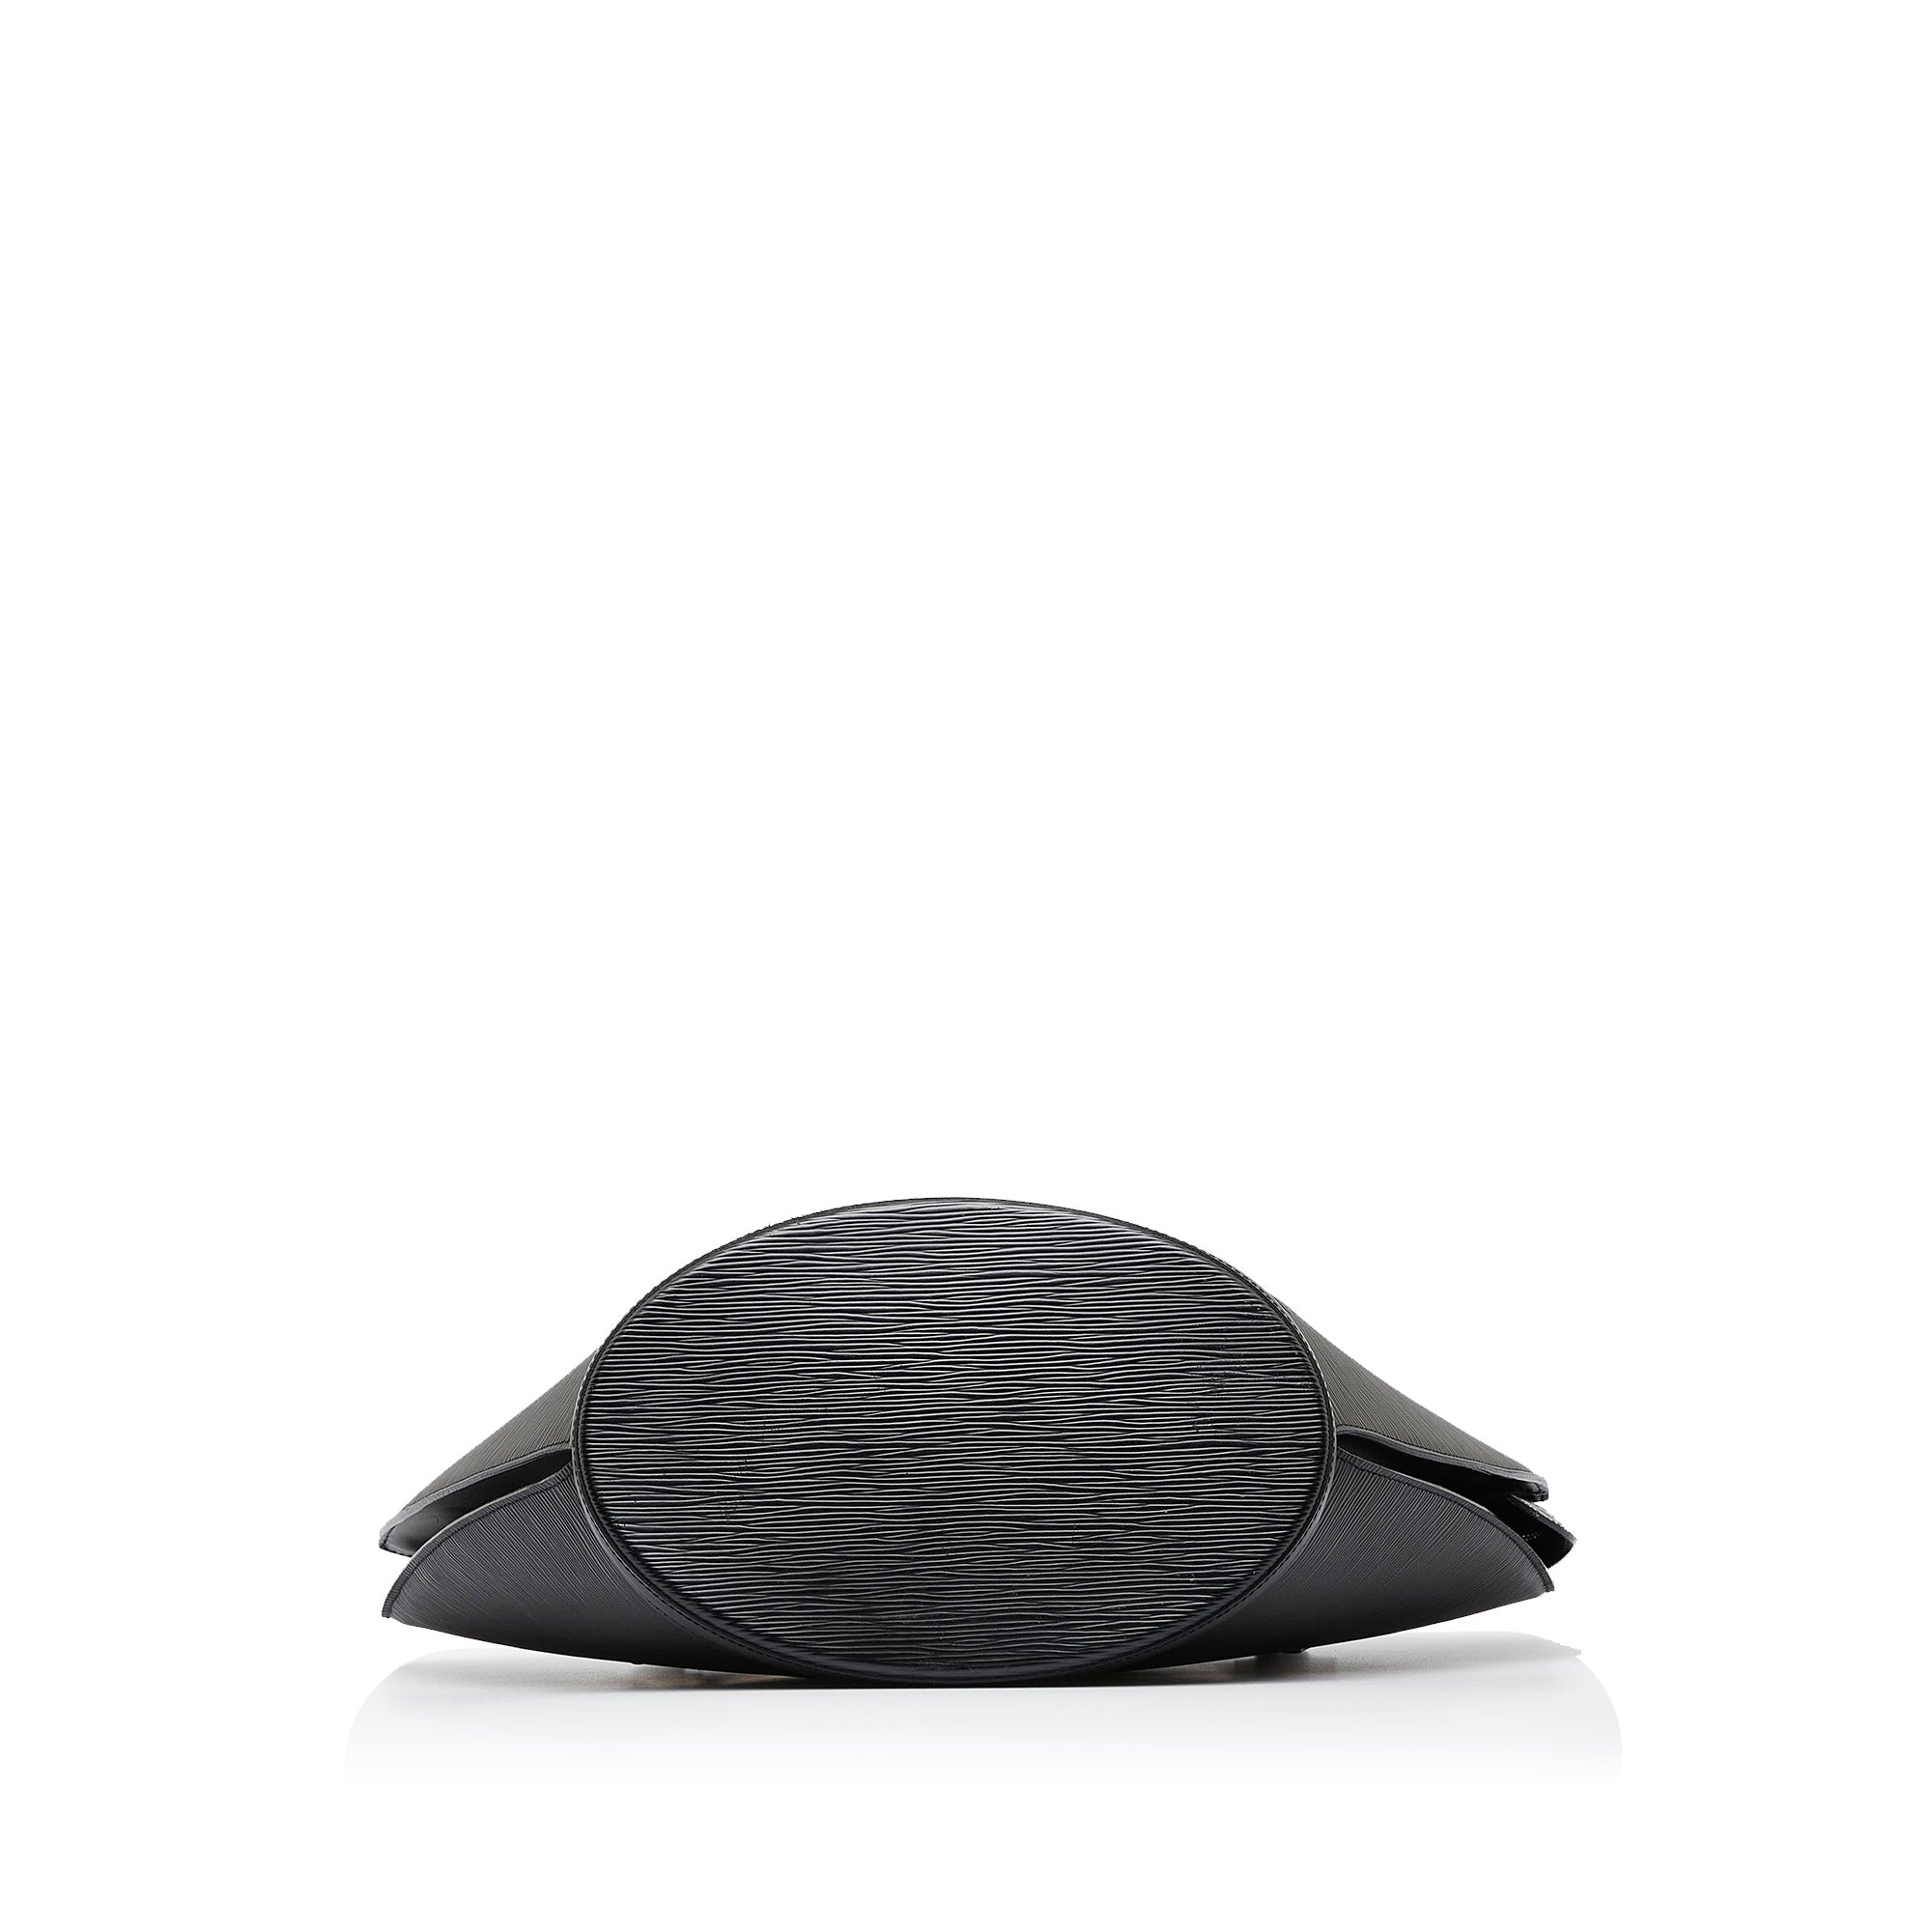 Black Louis Vuitton Epi Saint Jacques PM Short Strap Bag, Плащ ветровка в  стиле louis vuitton